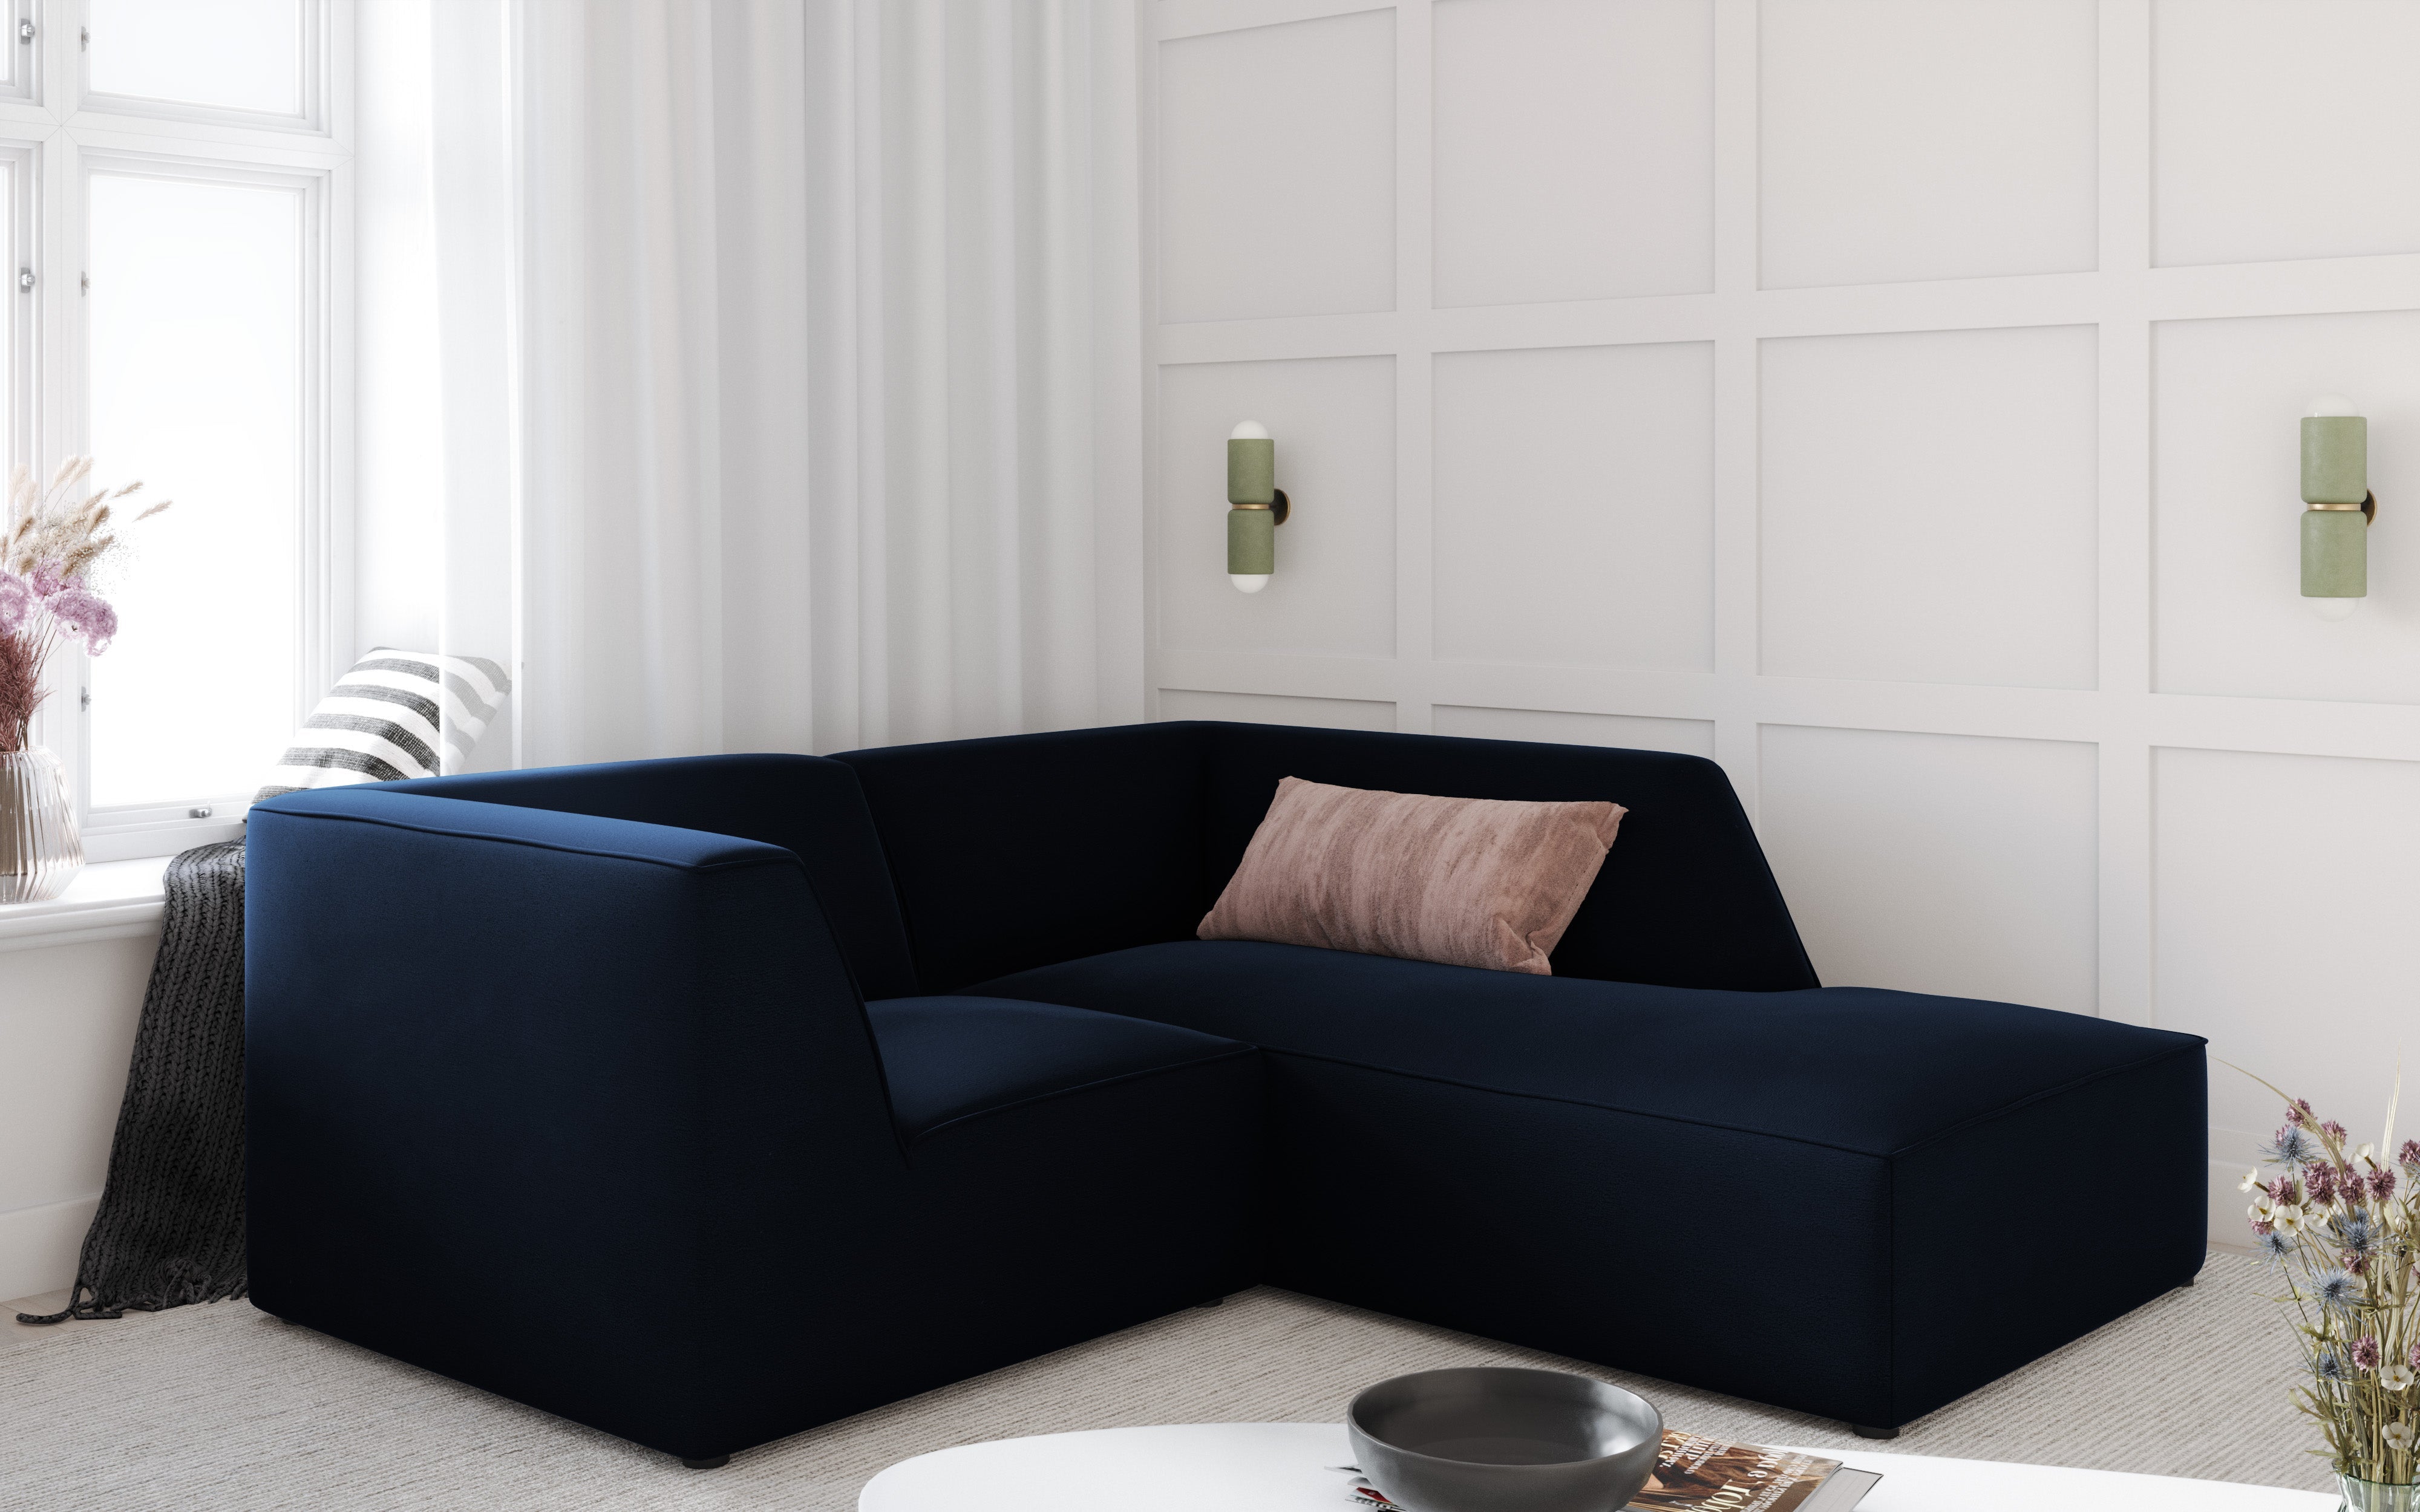 A corner for a minimalist interior